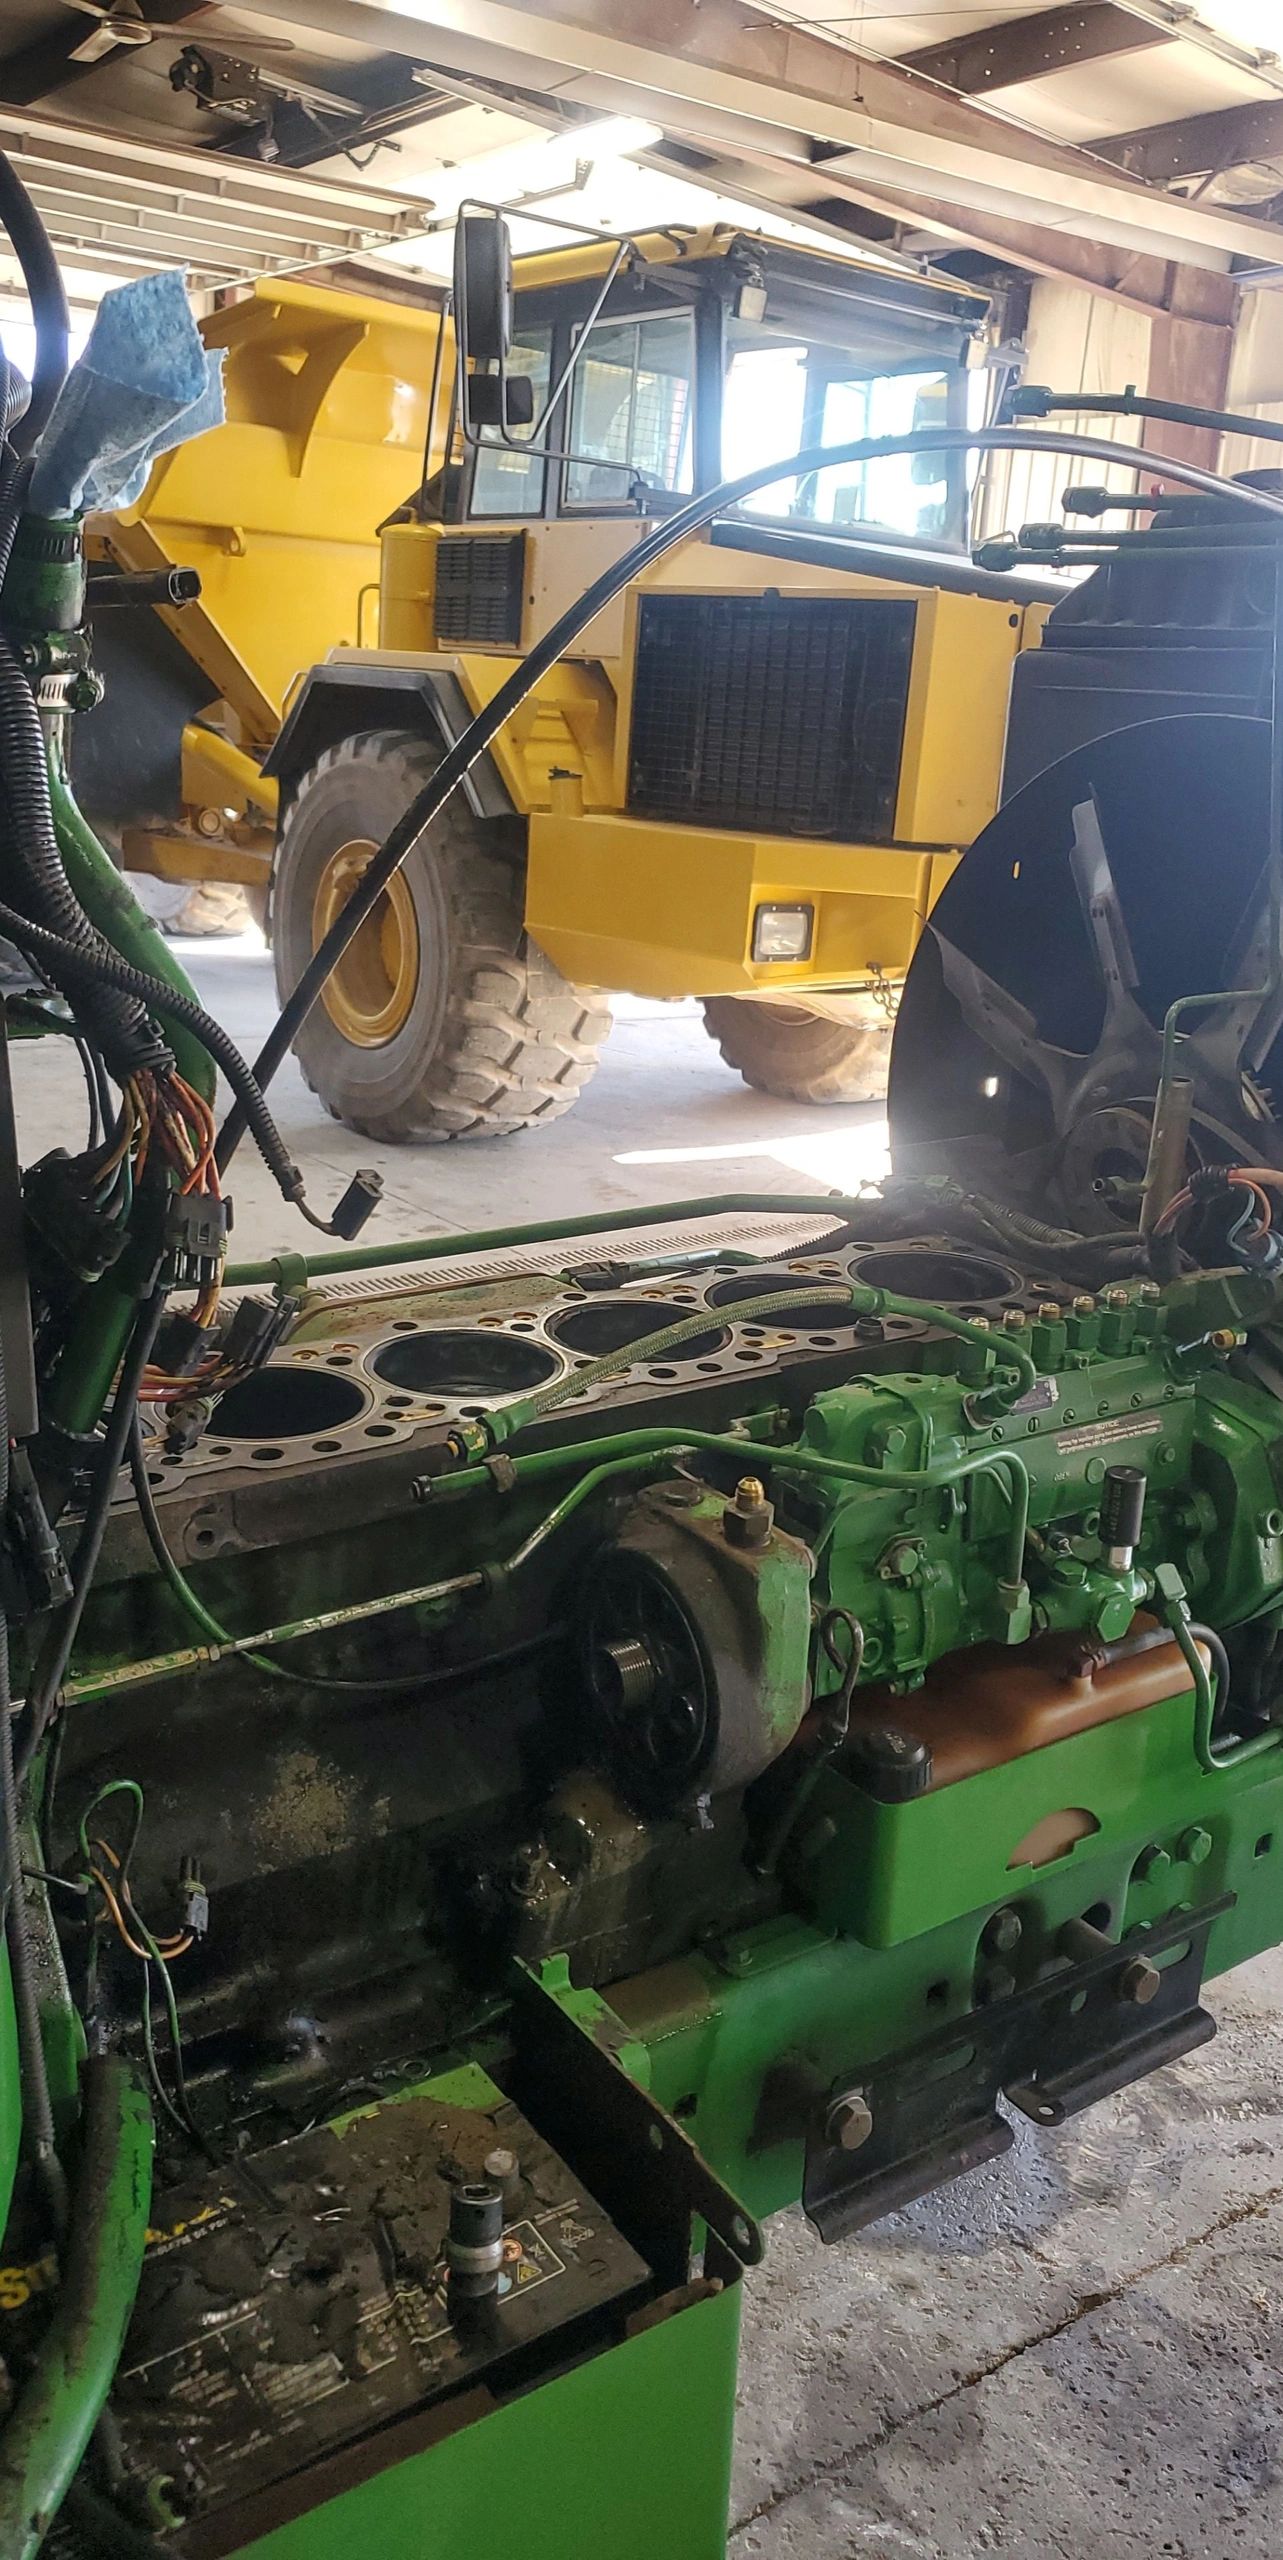 Engine rebuild on John Deere 4255
Steering valve & cylinders rebuild on Volvo Haul Truck